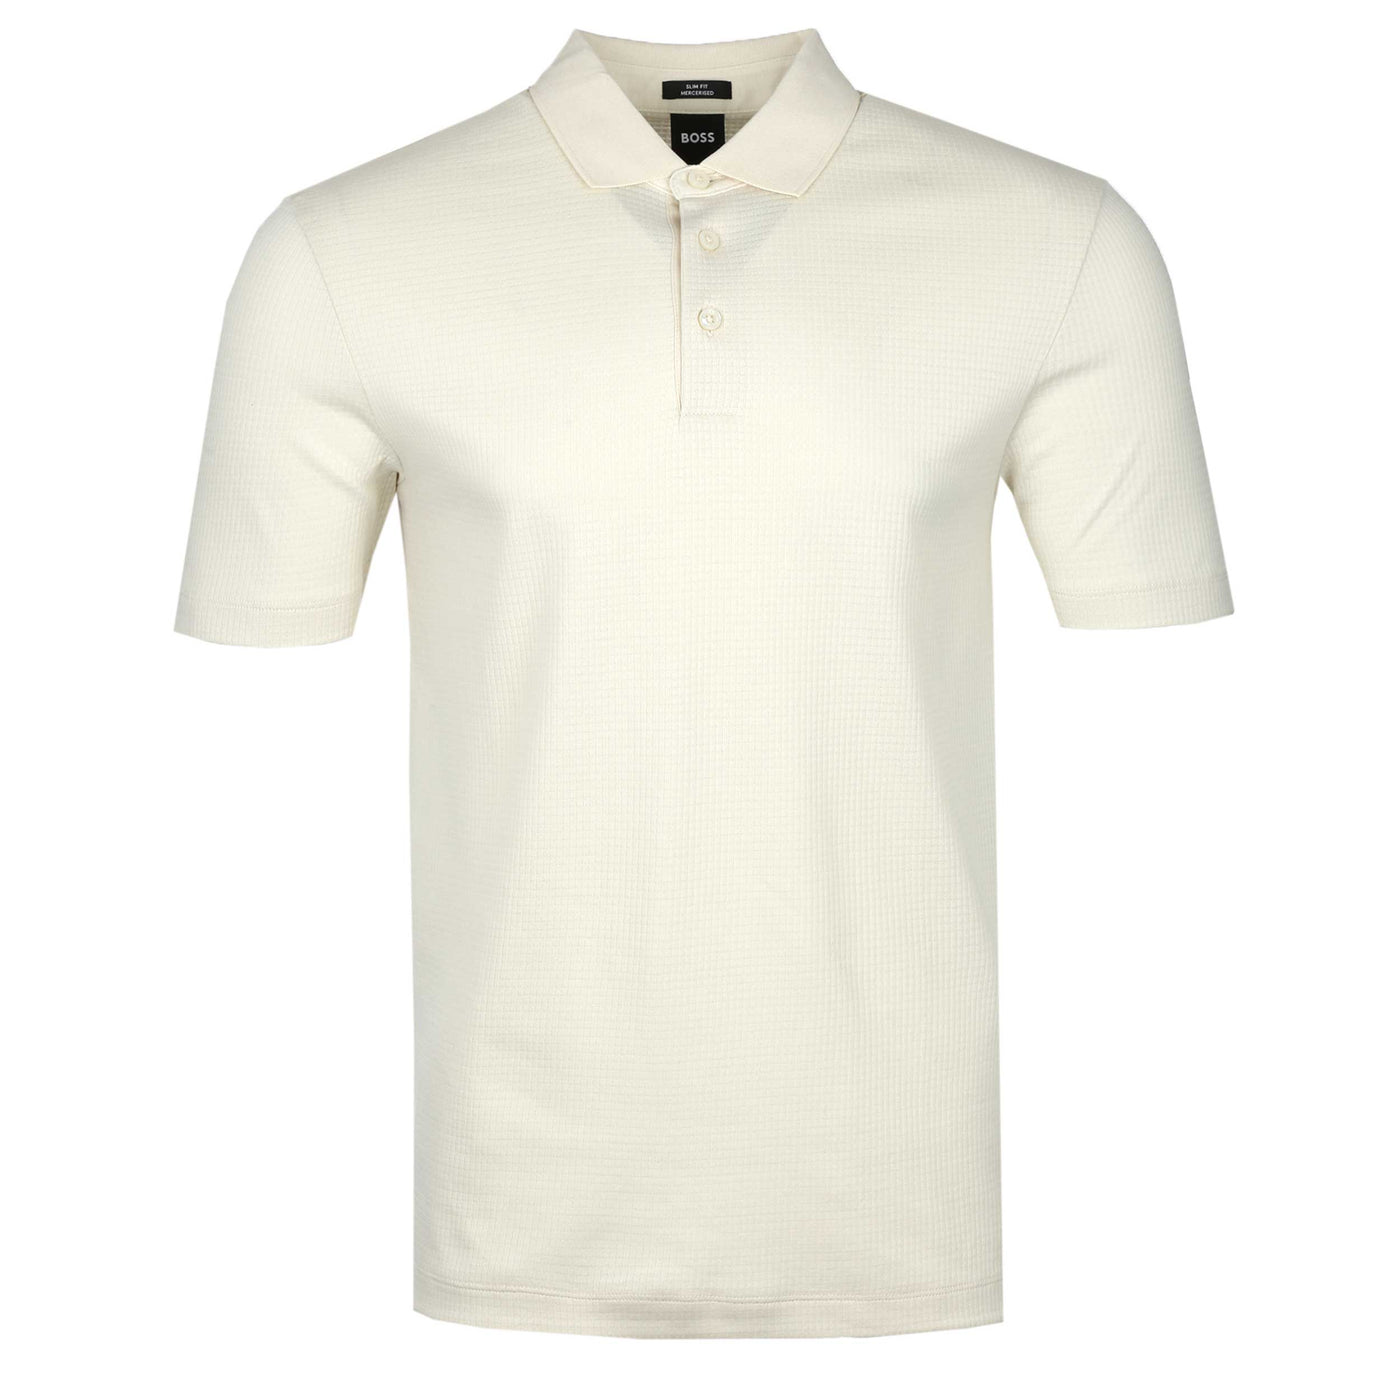 BOSS Pitton 31 Polo Shirt in Cream